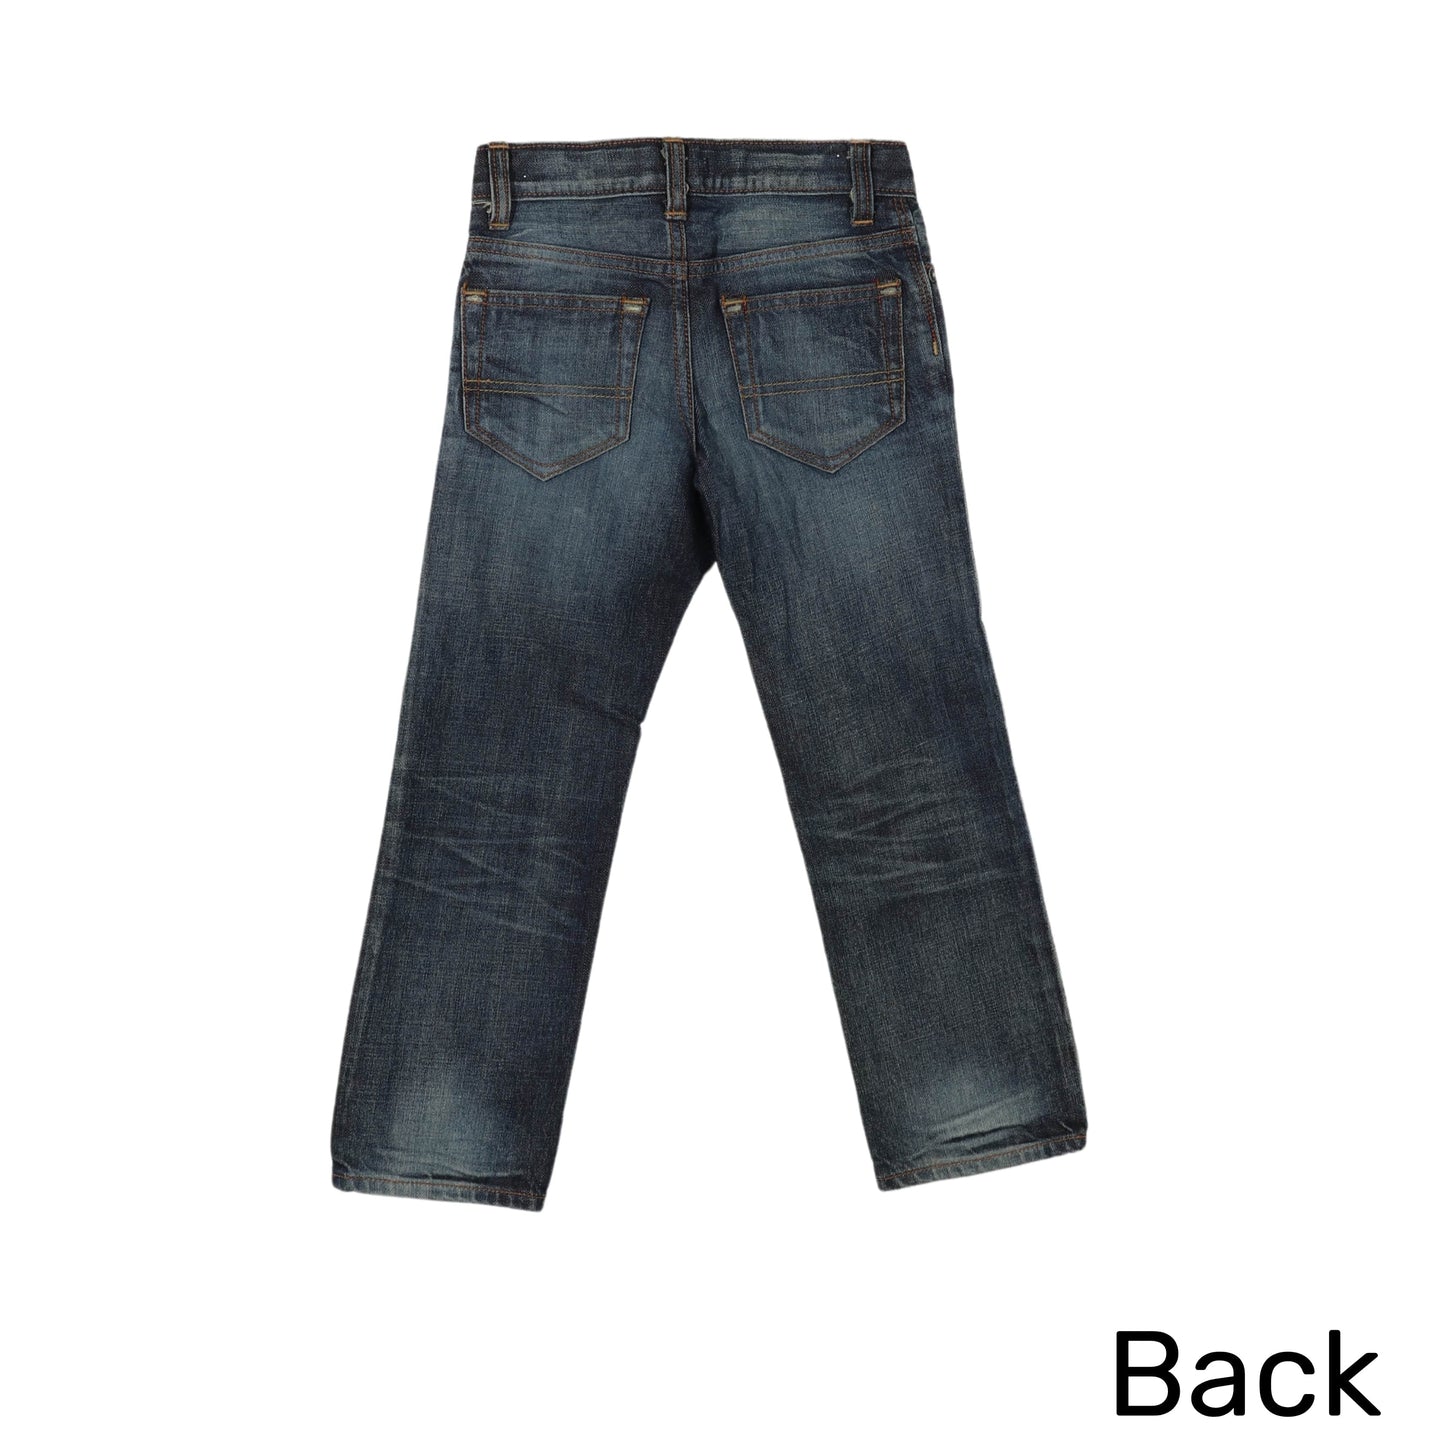 OSHKOSH Boys Bottoms 5 Years / Blue OSHKOSH - Kids - Stylish Jeans